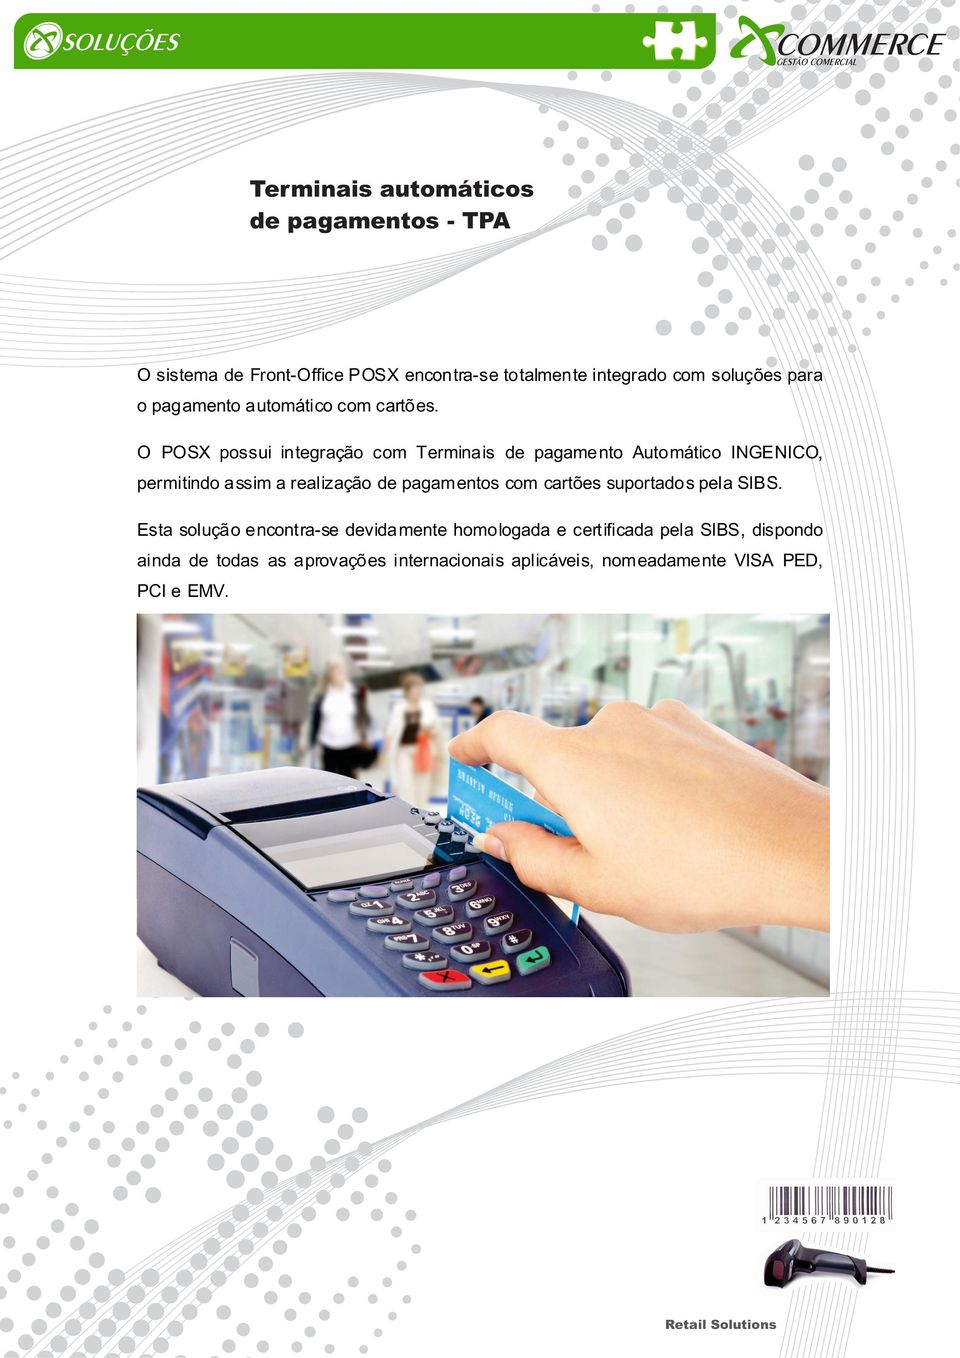 O POSX possui integração com Terminais de pagamento Automático INGENICO, permitindo assim a realização de pagamentos com